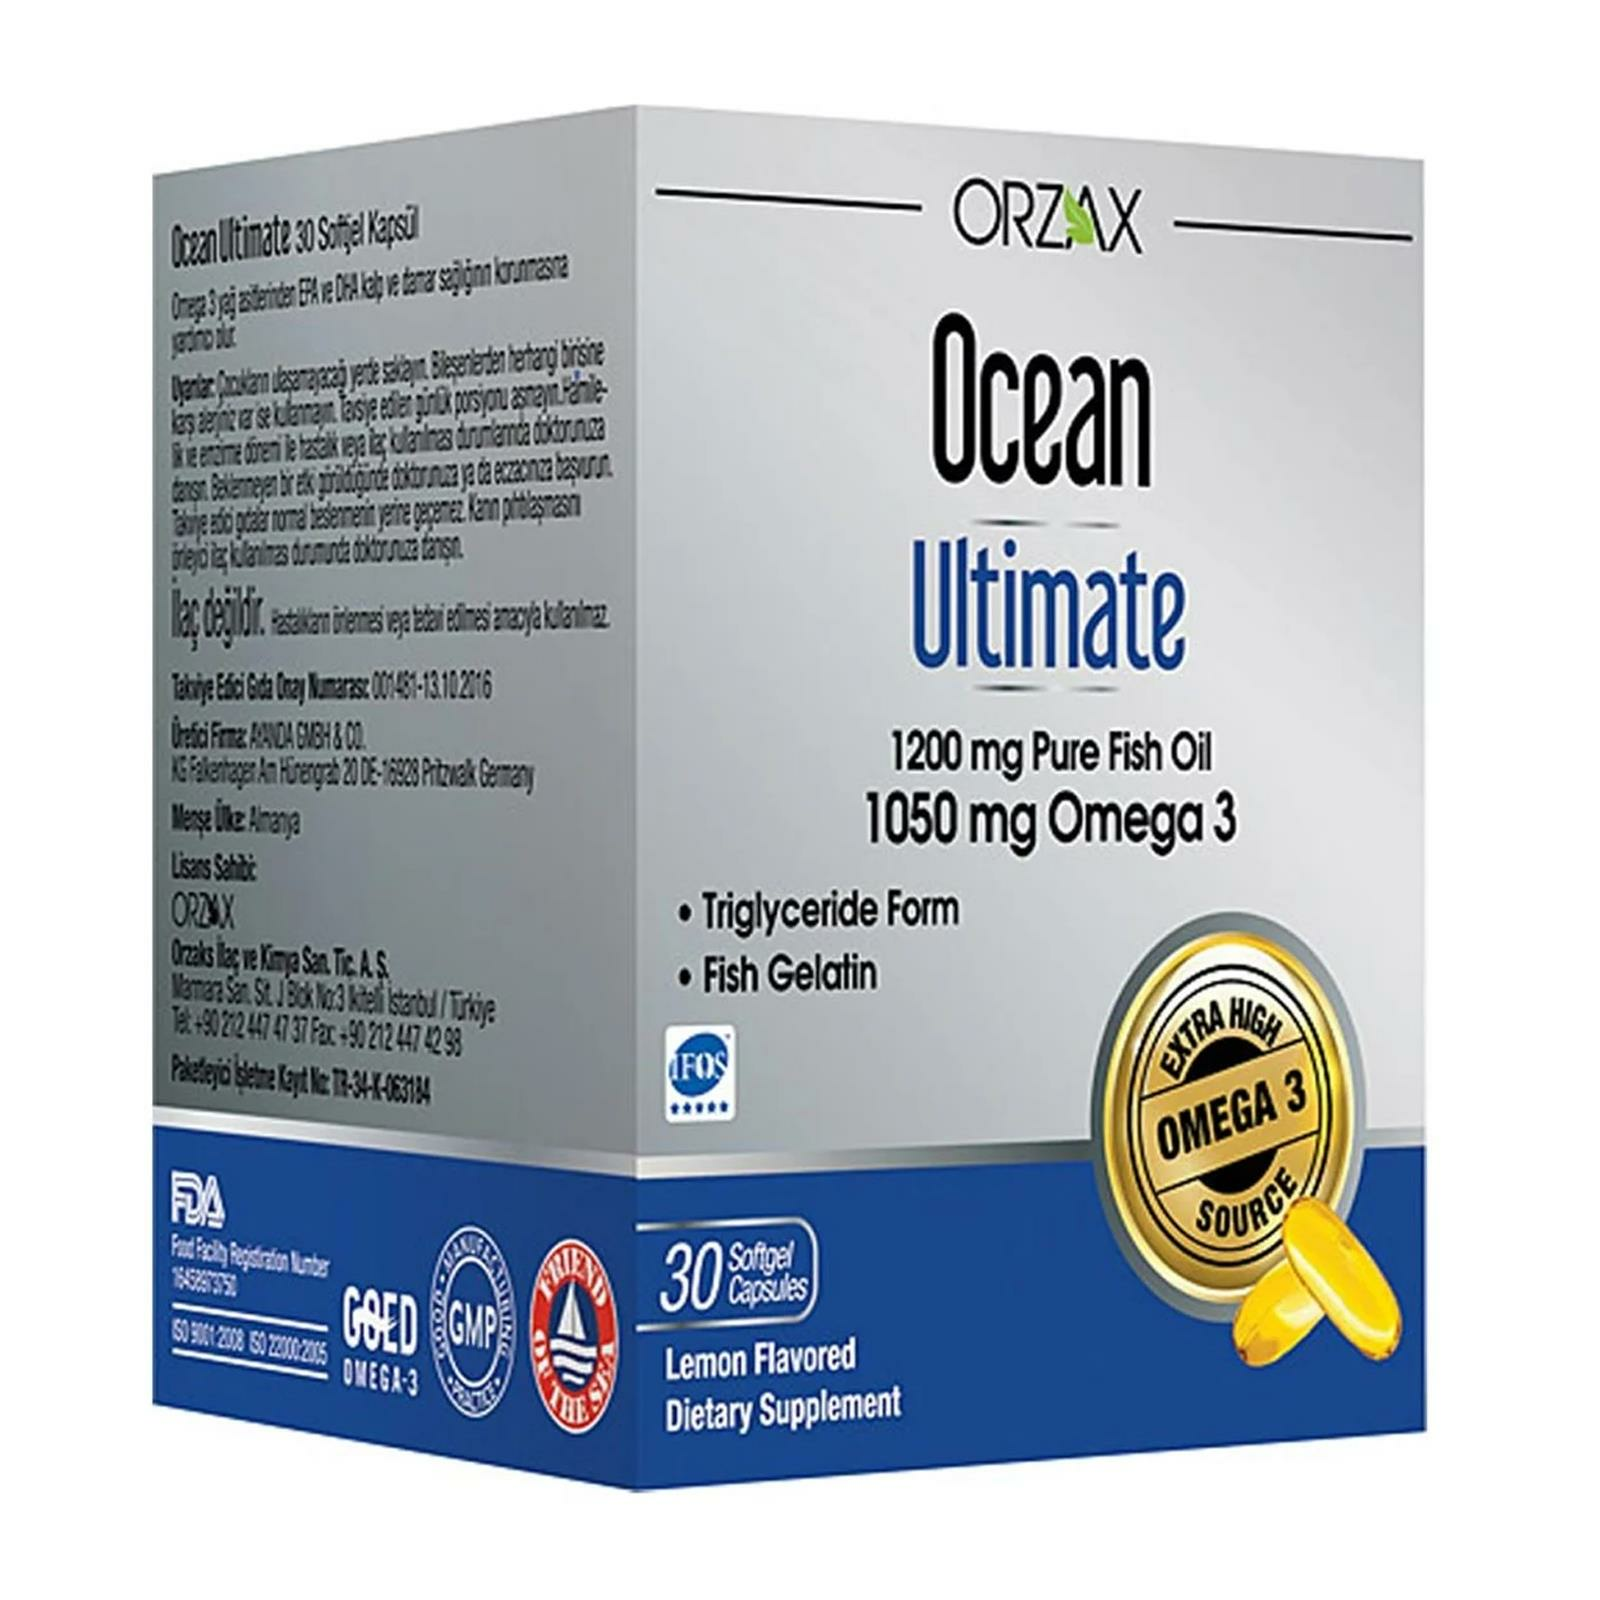 Ocean Ultimate 1200 mg Balık Yağı 30 Softjel Kapsül